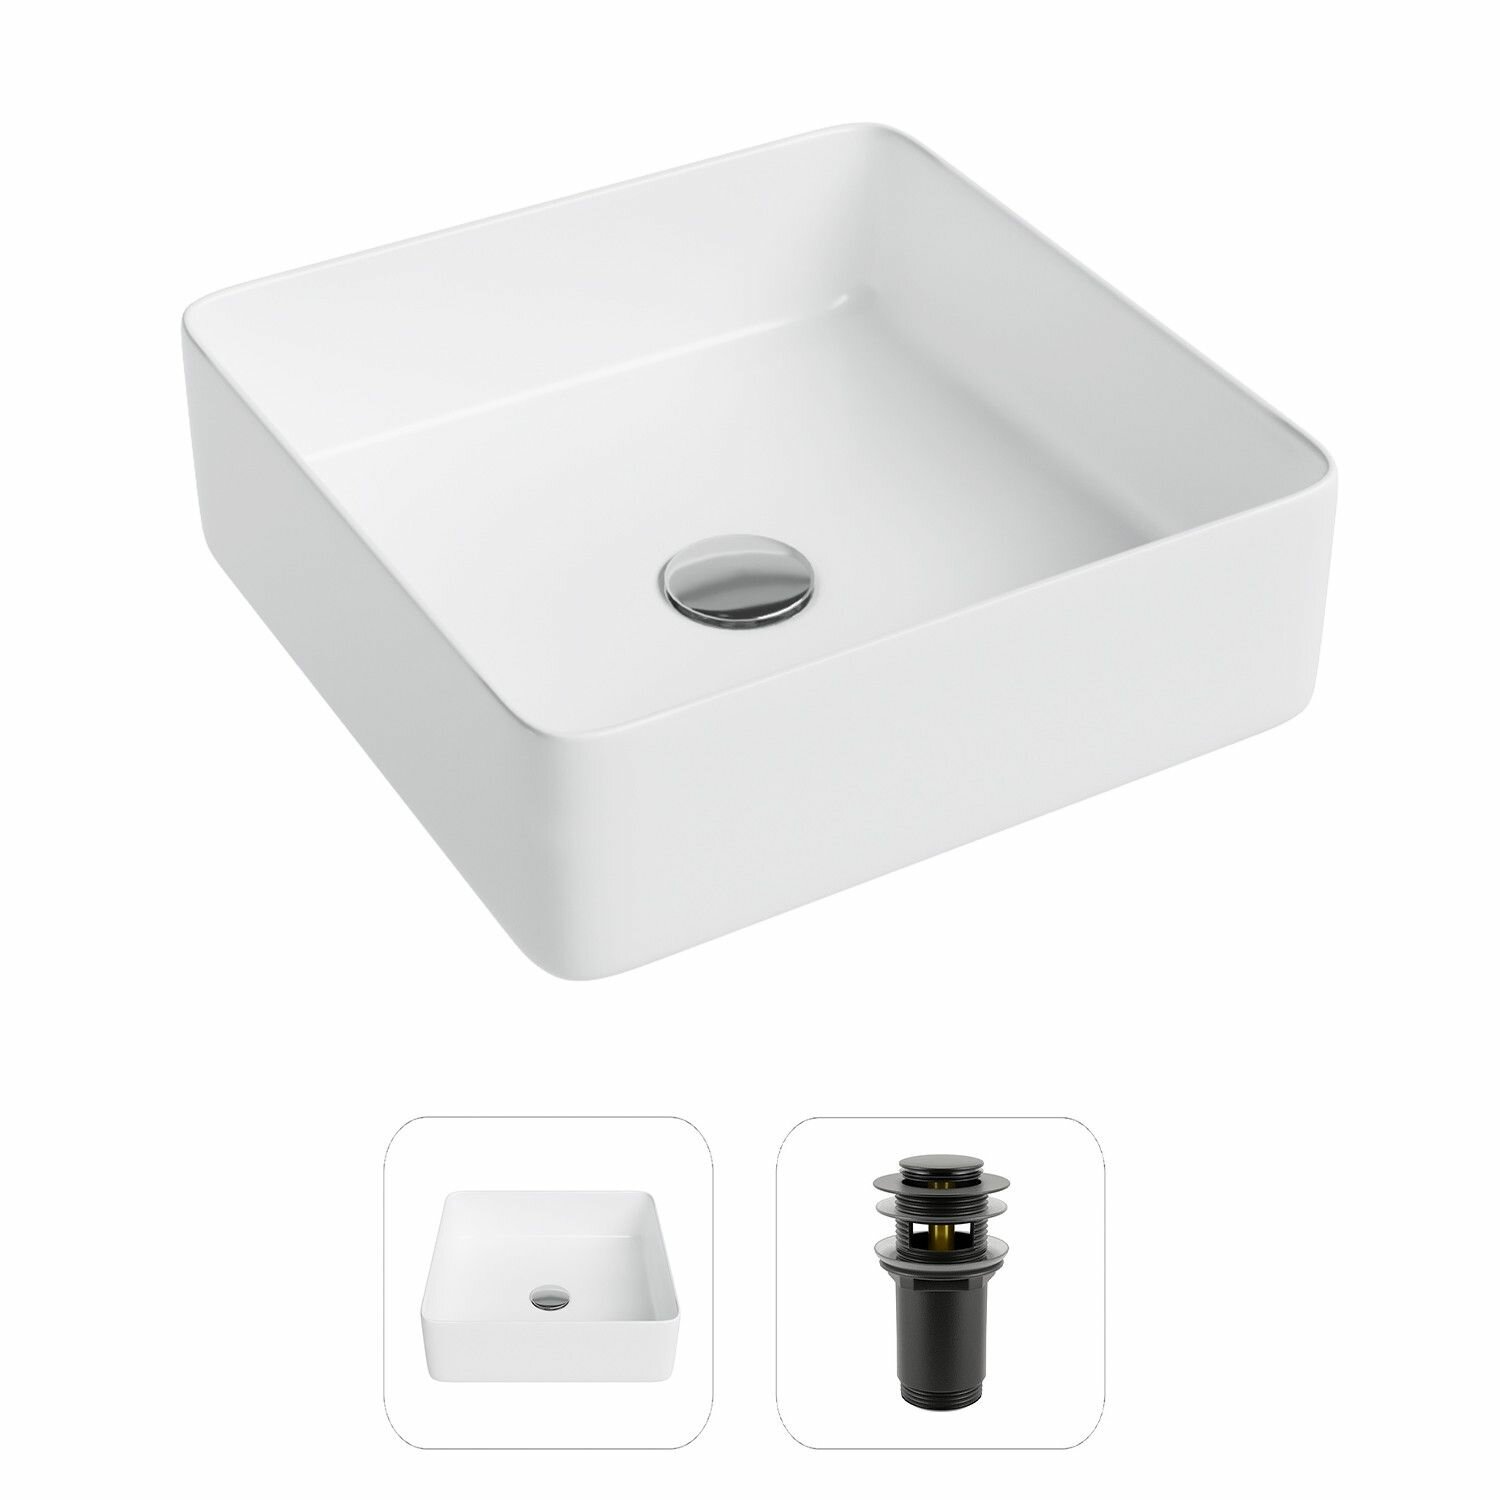 Накладная раковина в ванную Helmken 48837000 комплект 2 в 1: умывальник квадратный 37 см, донный клапан click-clack в цвете черный, гарантия 25 лет